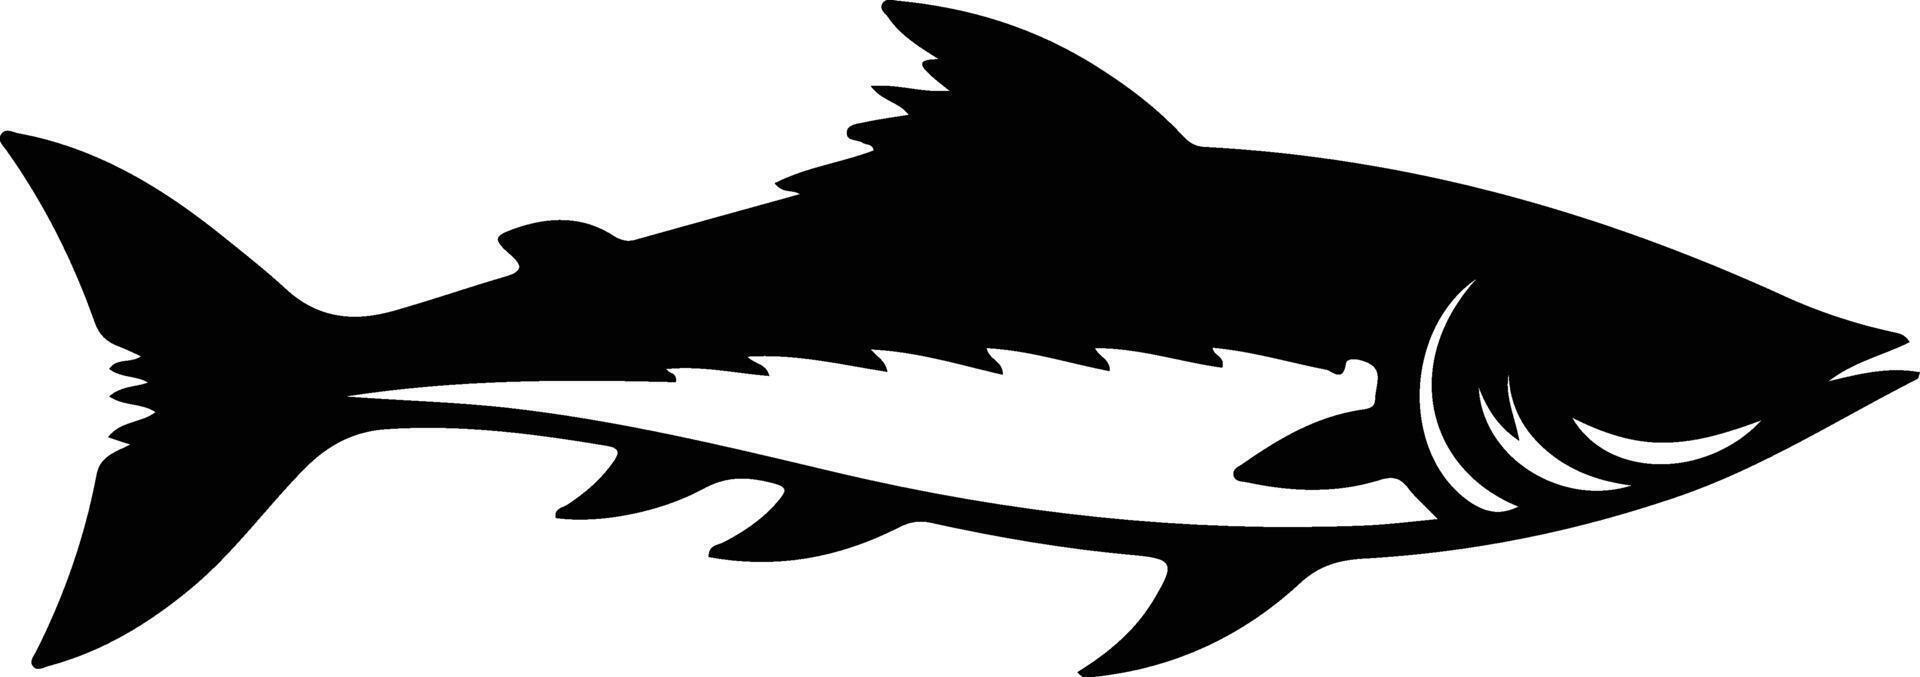 Barracuda nero silhouette vettore